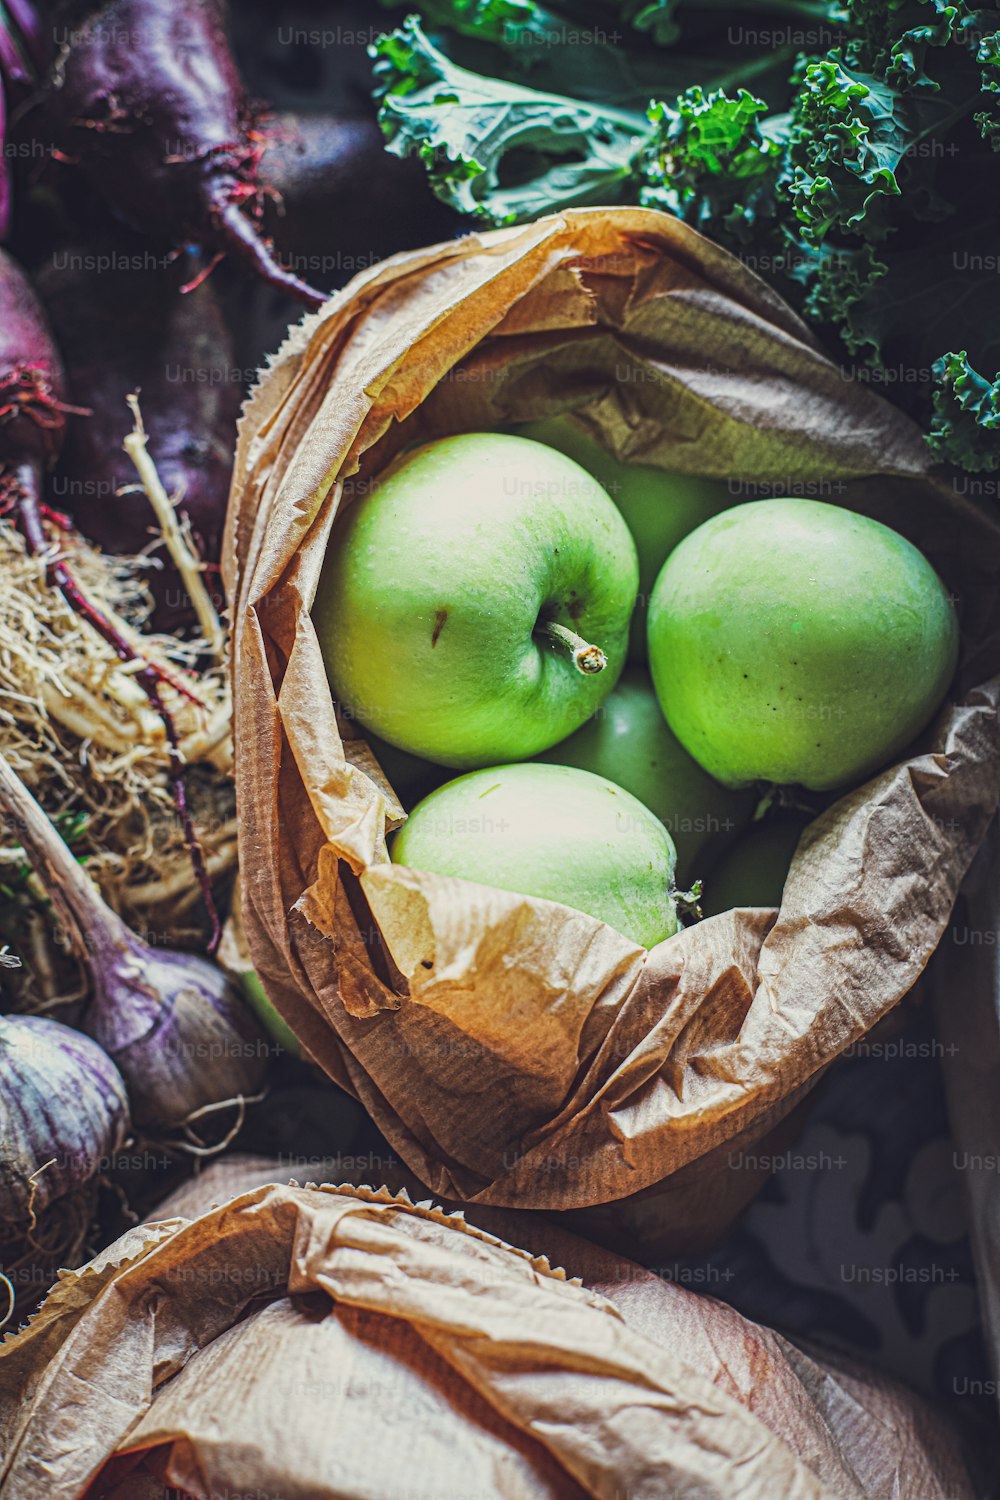 Una bolsa llena de manzanas verdes encima de una pila de verduras